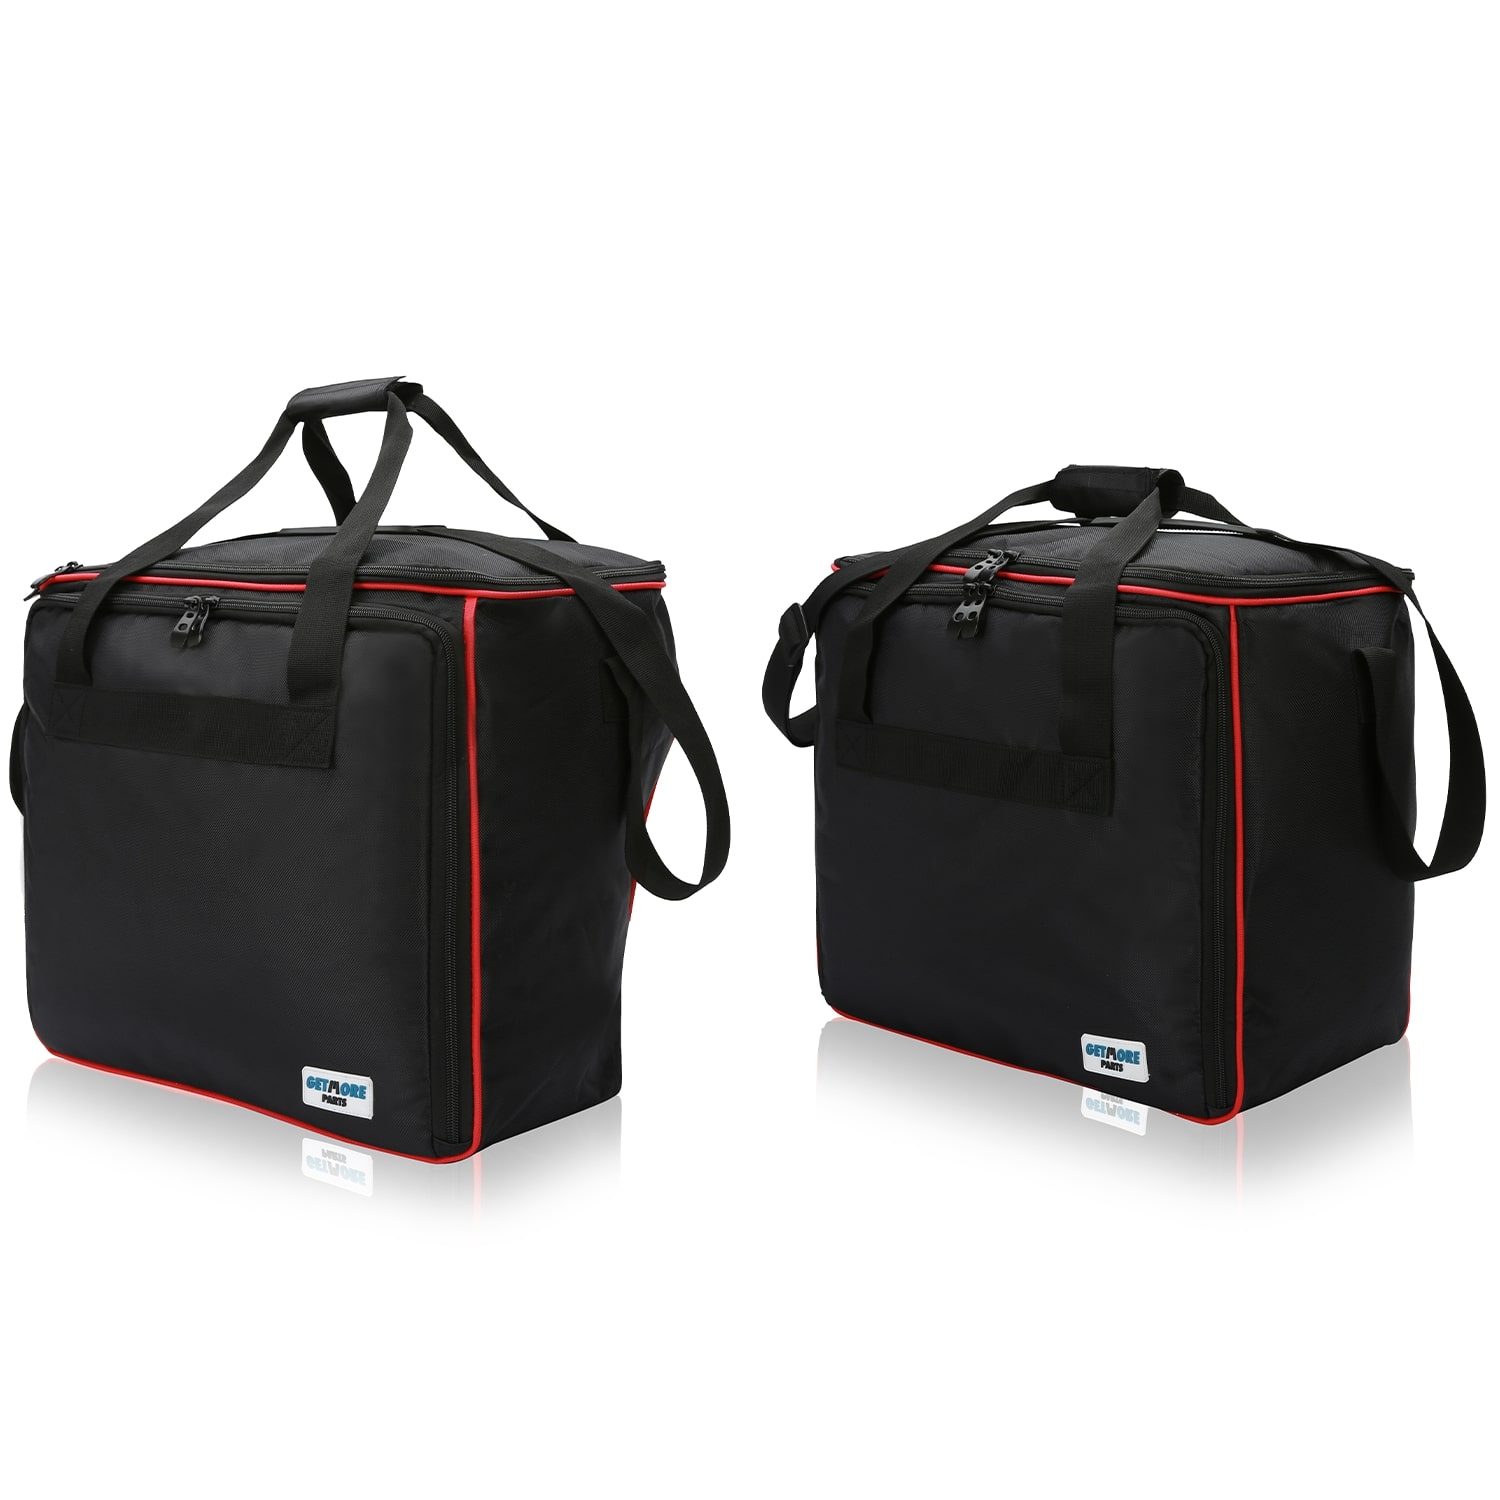 Inner bags for Ducati Multistrada as of 2015